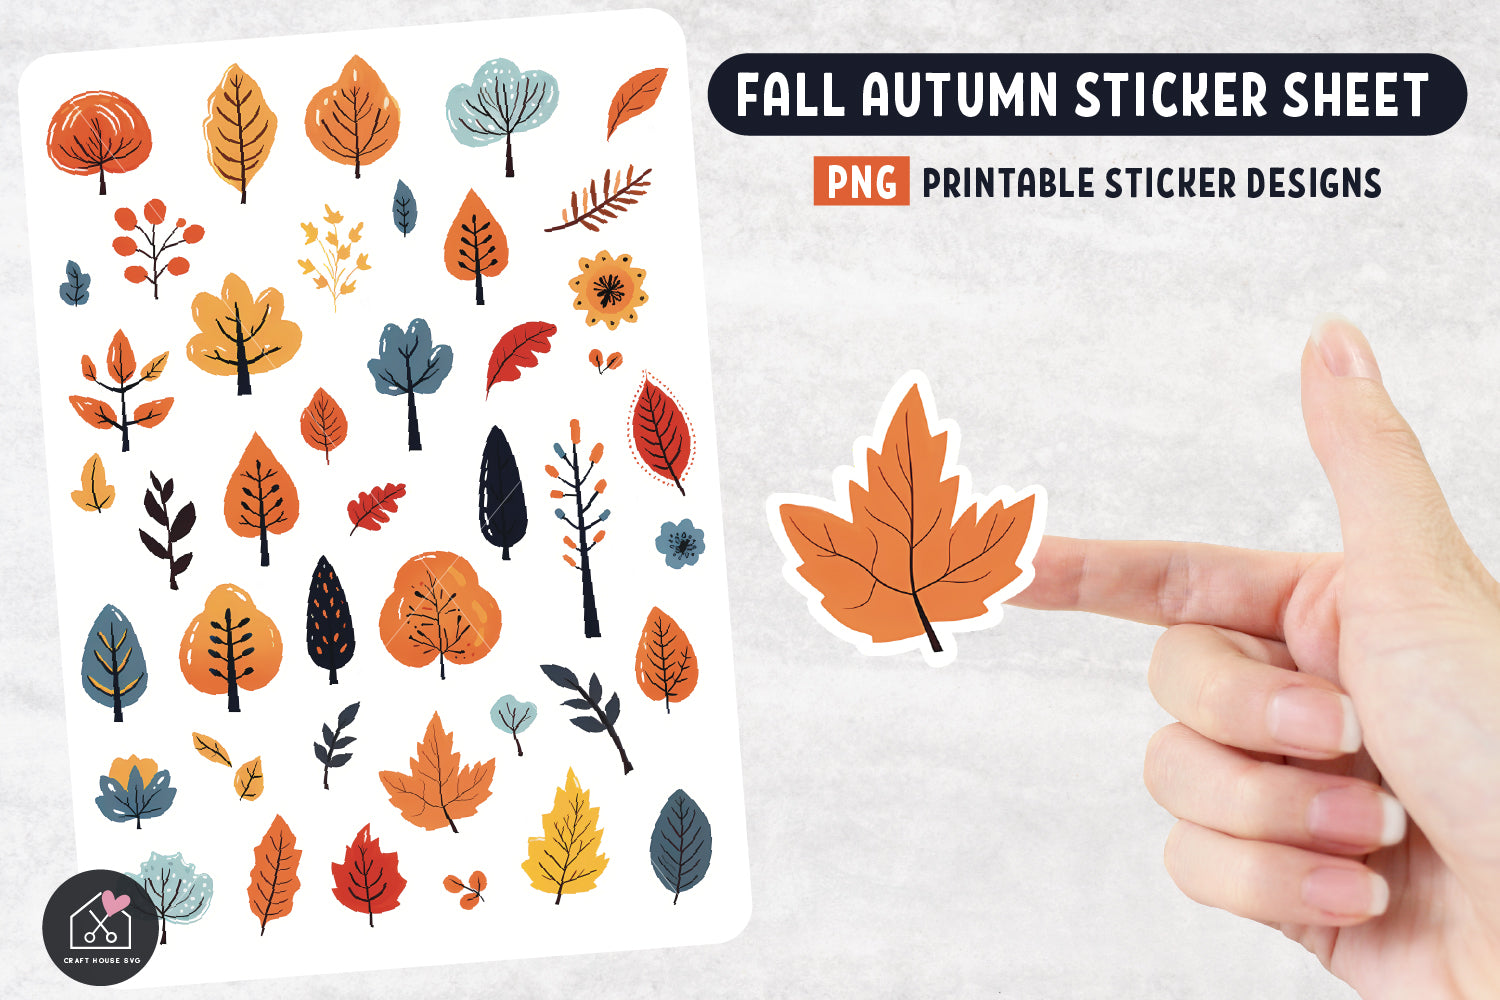 Fall Autumn Sticker Sheet PNG Print and Cut Sticker Designs